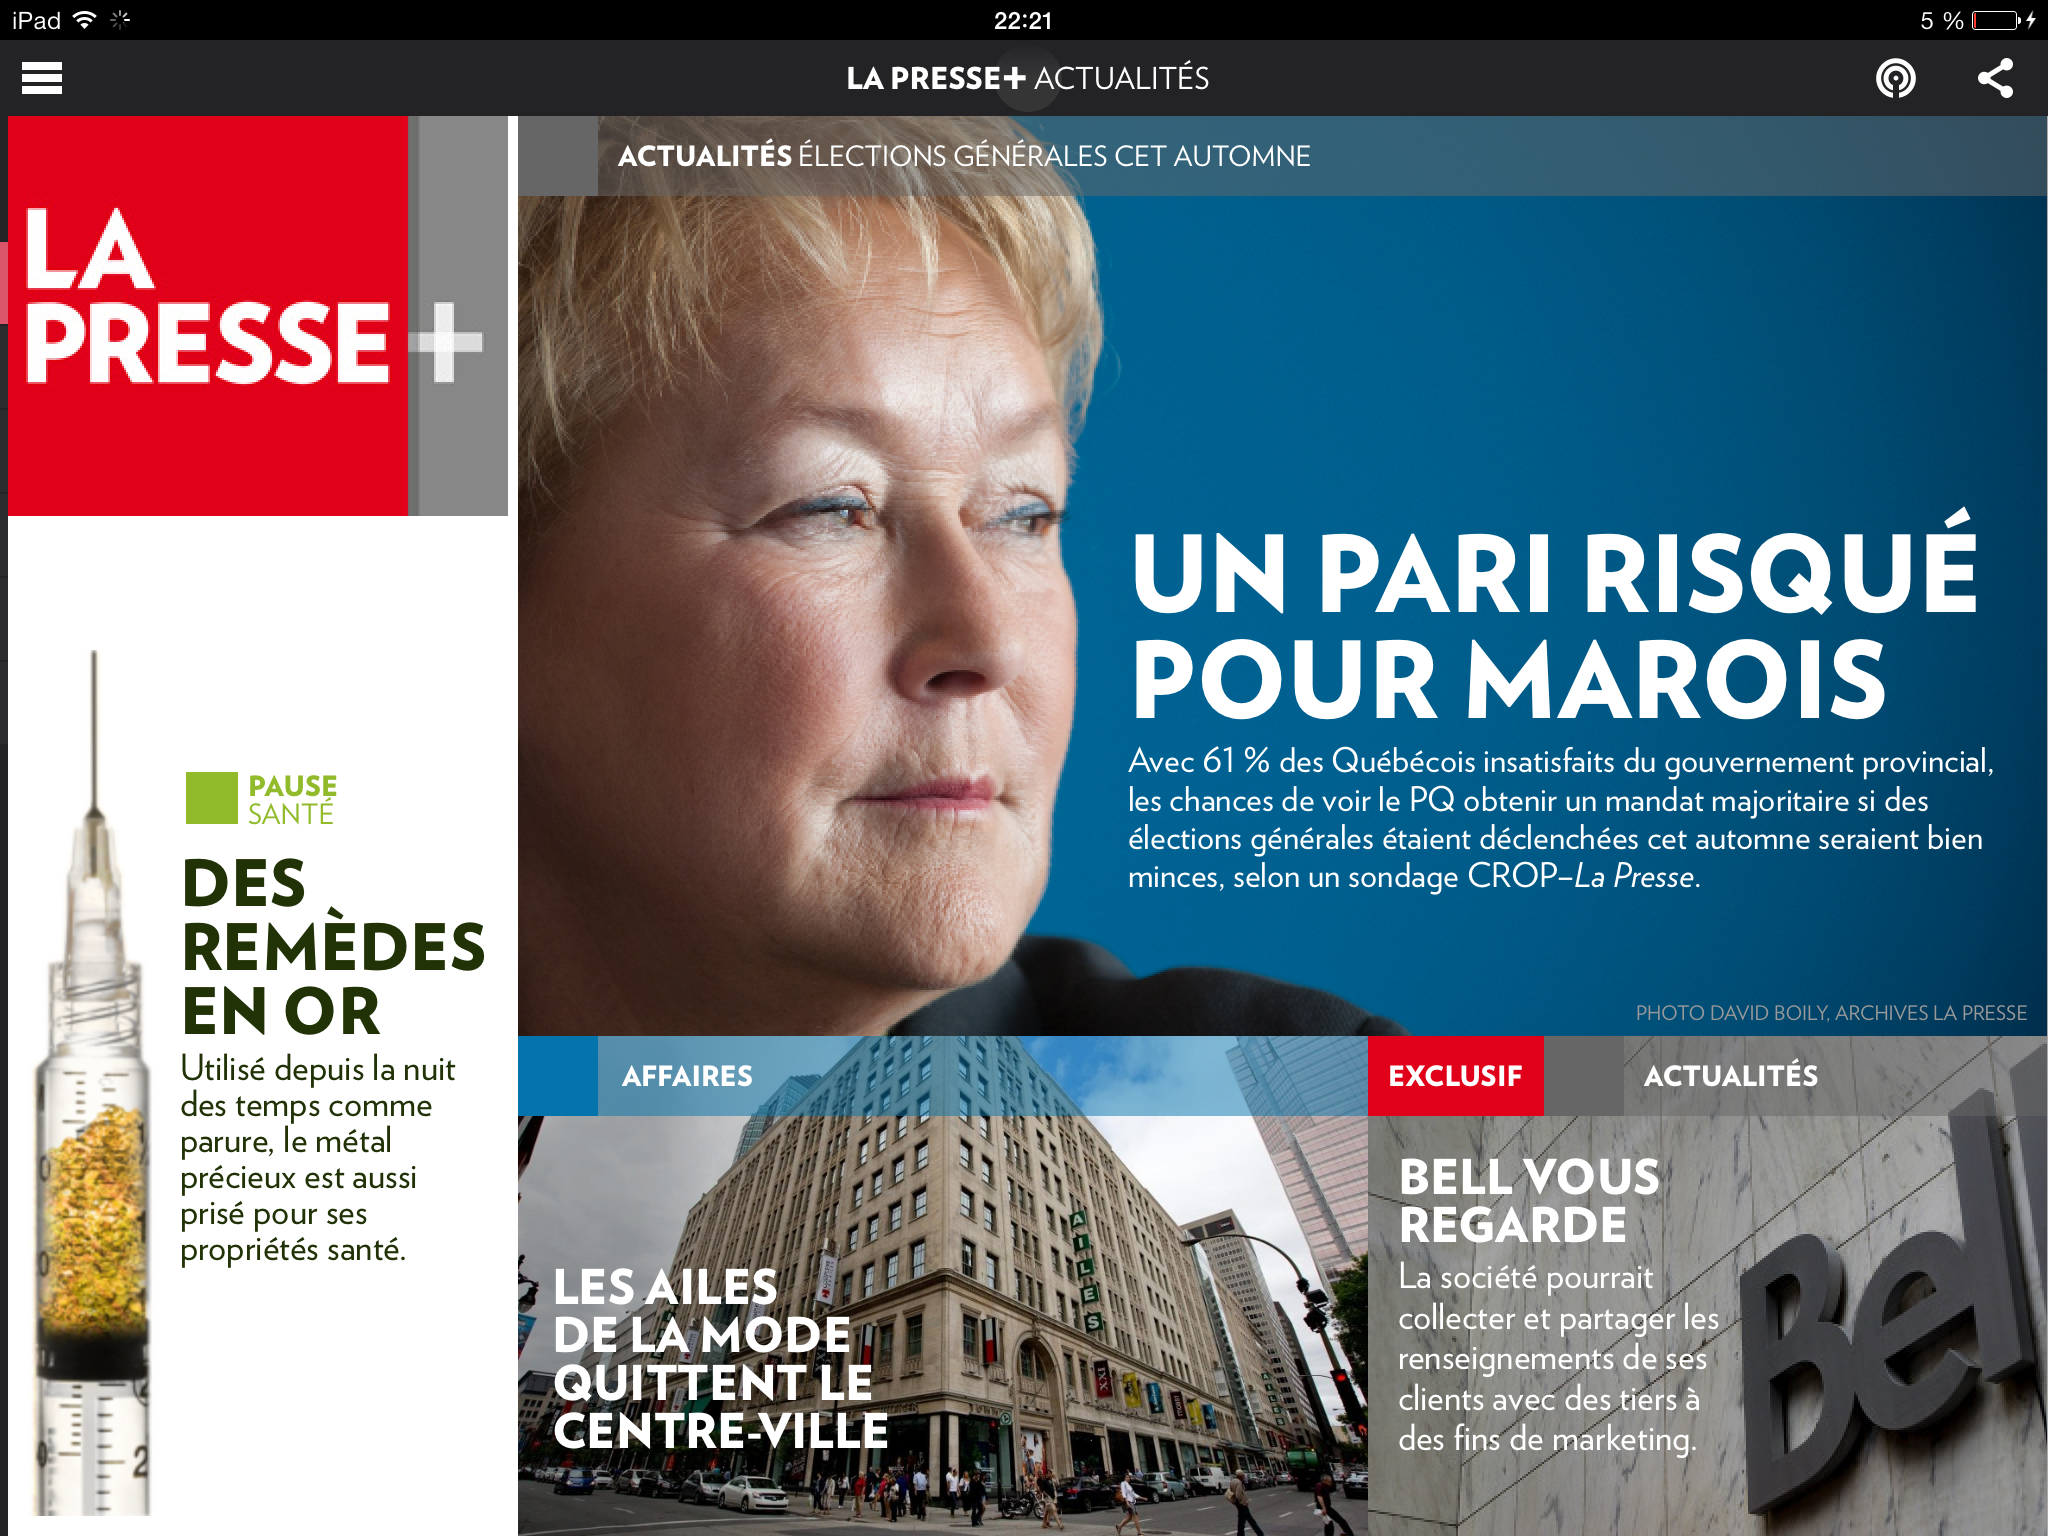 La Presse+, page d'accueil